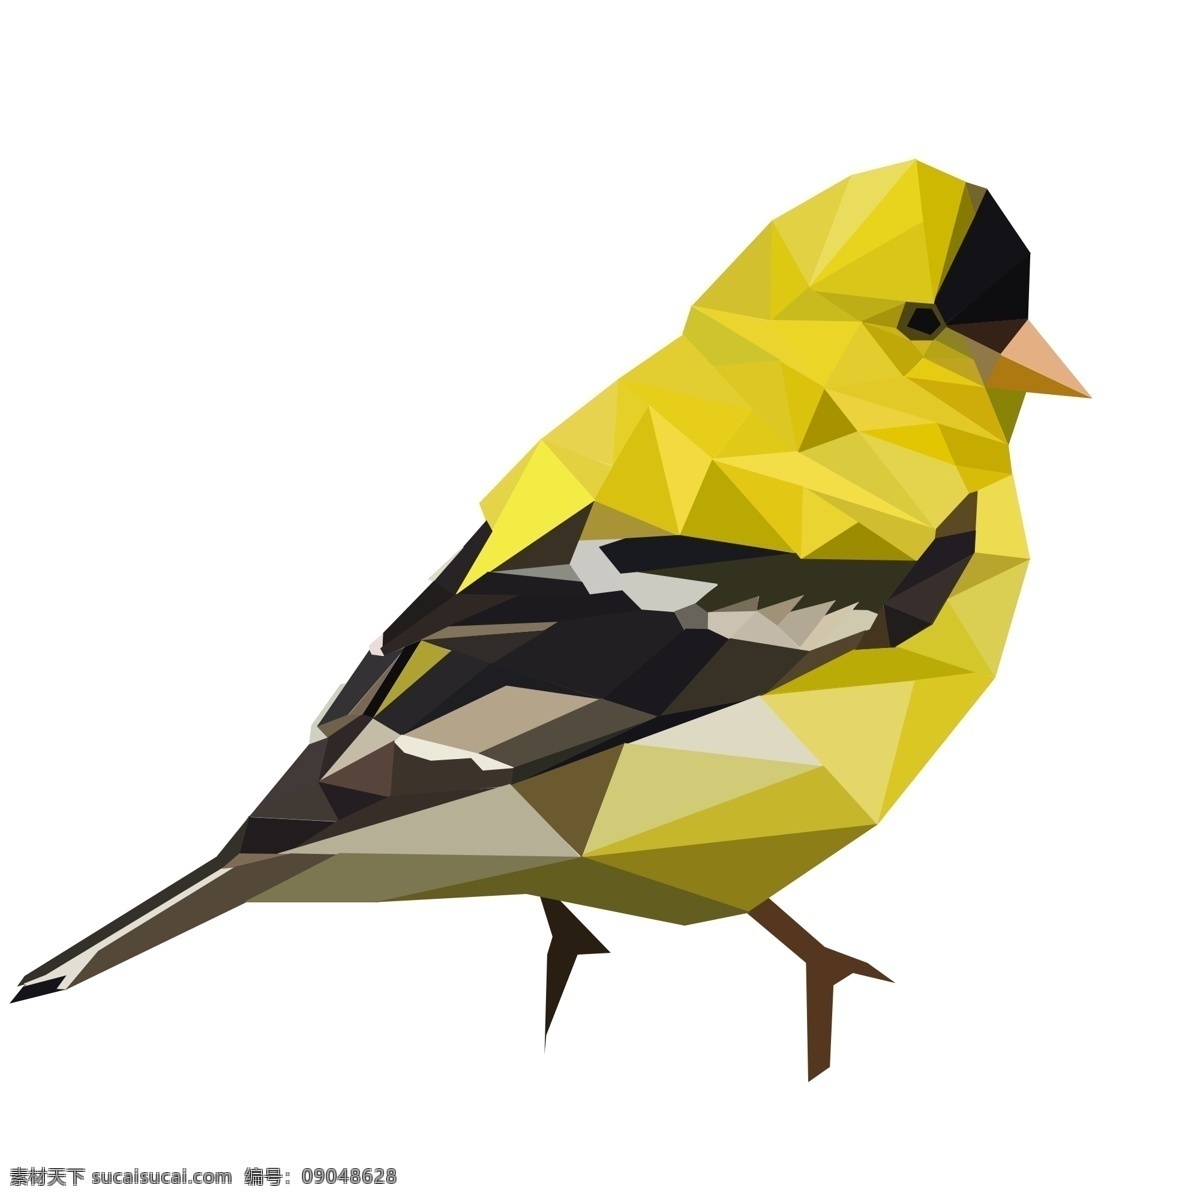 色块 拼接 低 多边形 小鸟 原创 商用 鸟 几何 黄色 低多边形